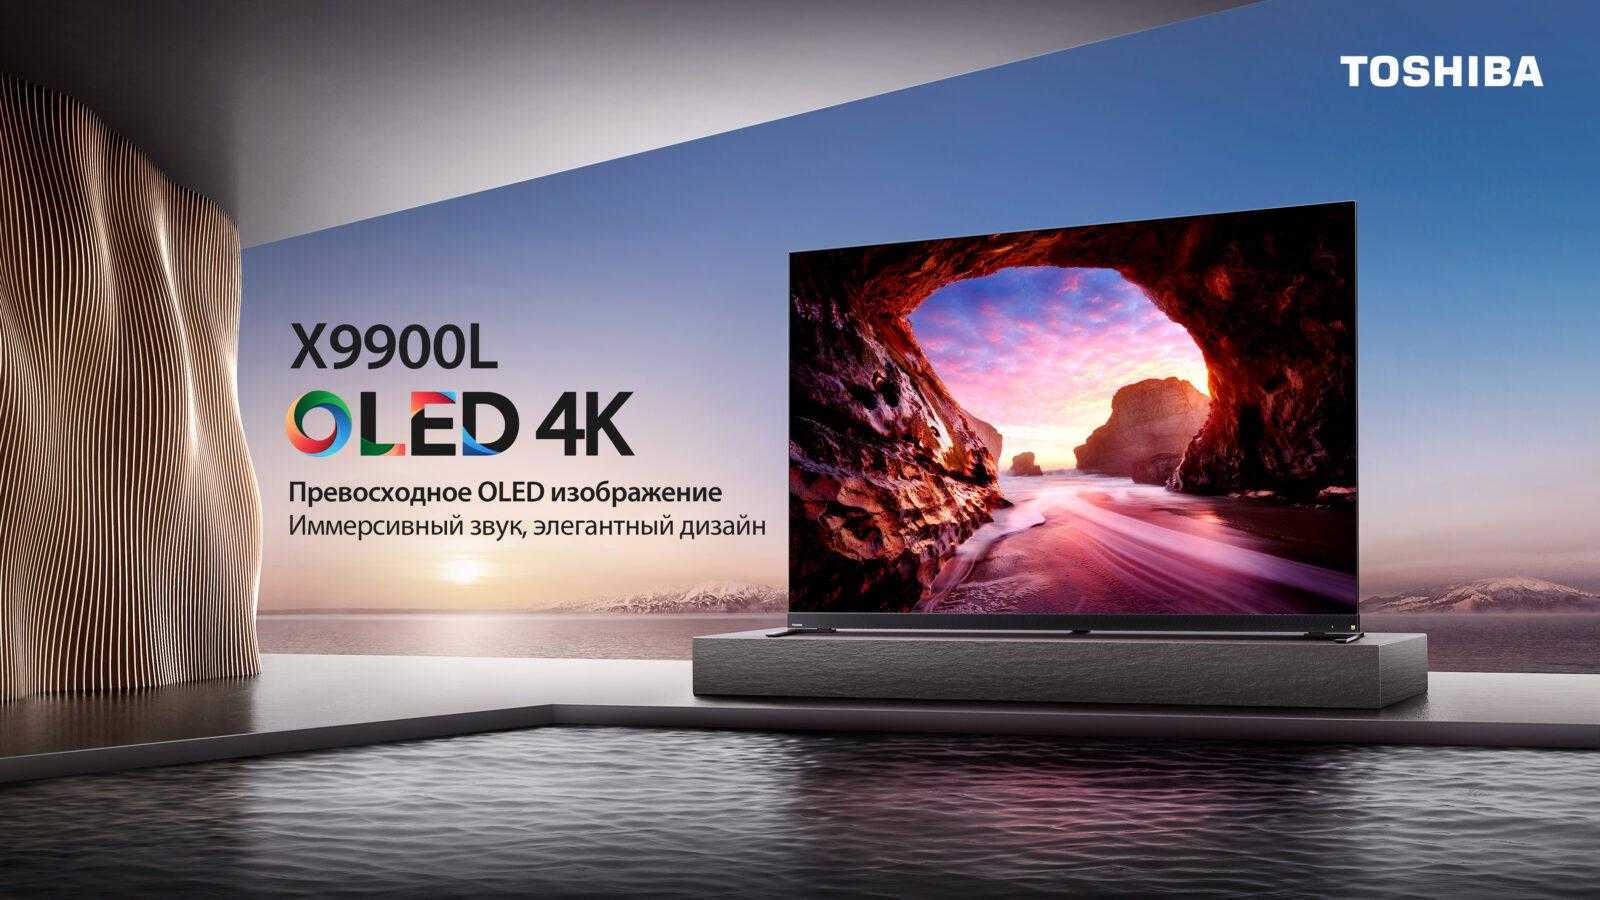 Обзор OLED-телевизора Toshiba X9900: современные технологии в премиум-классе (x9900l kv)